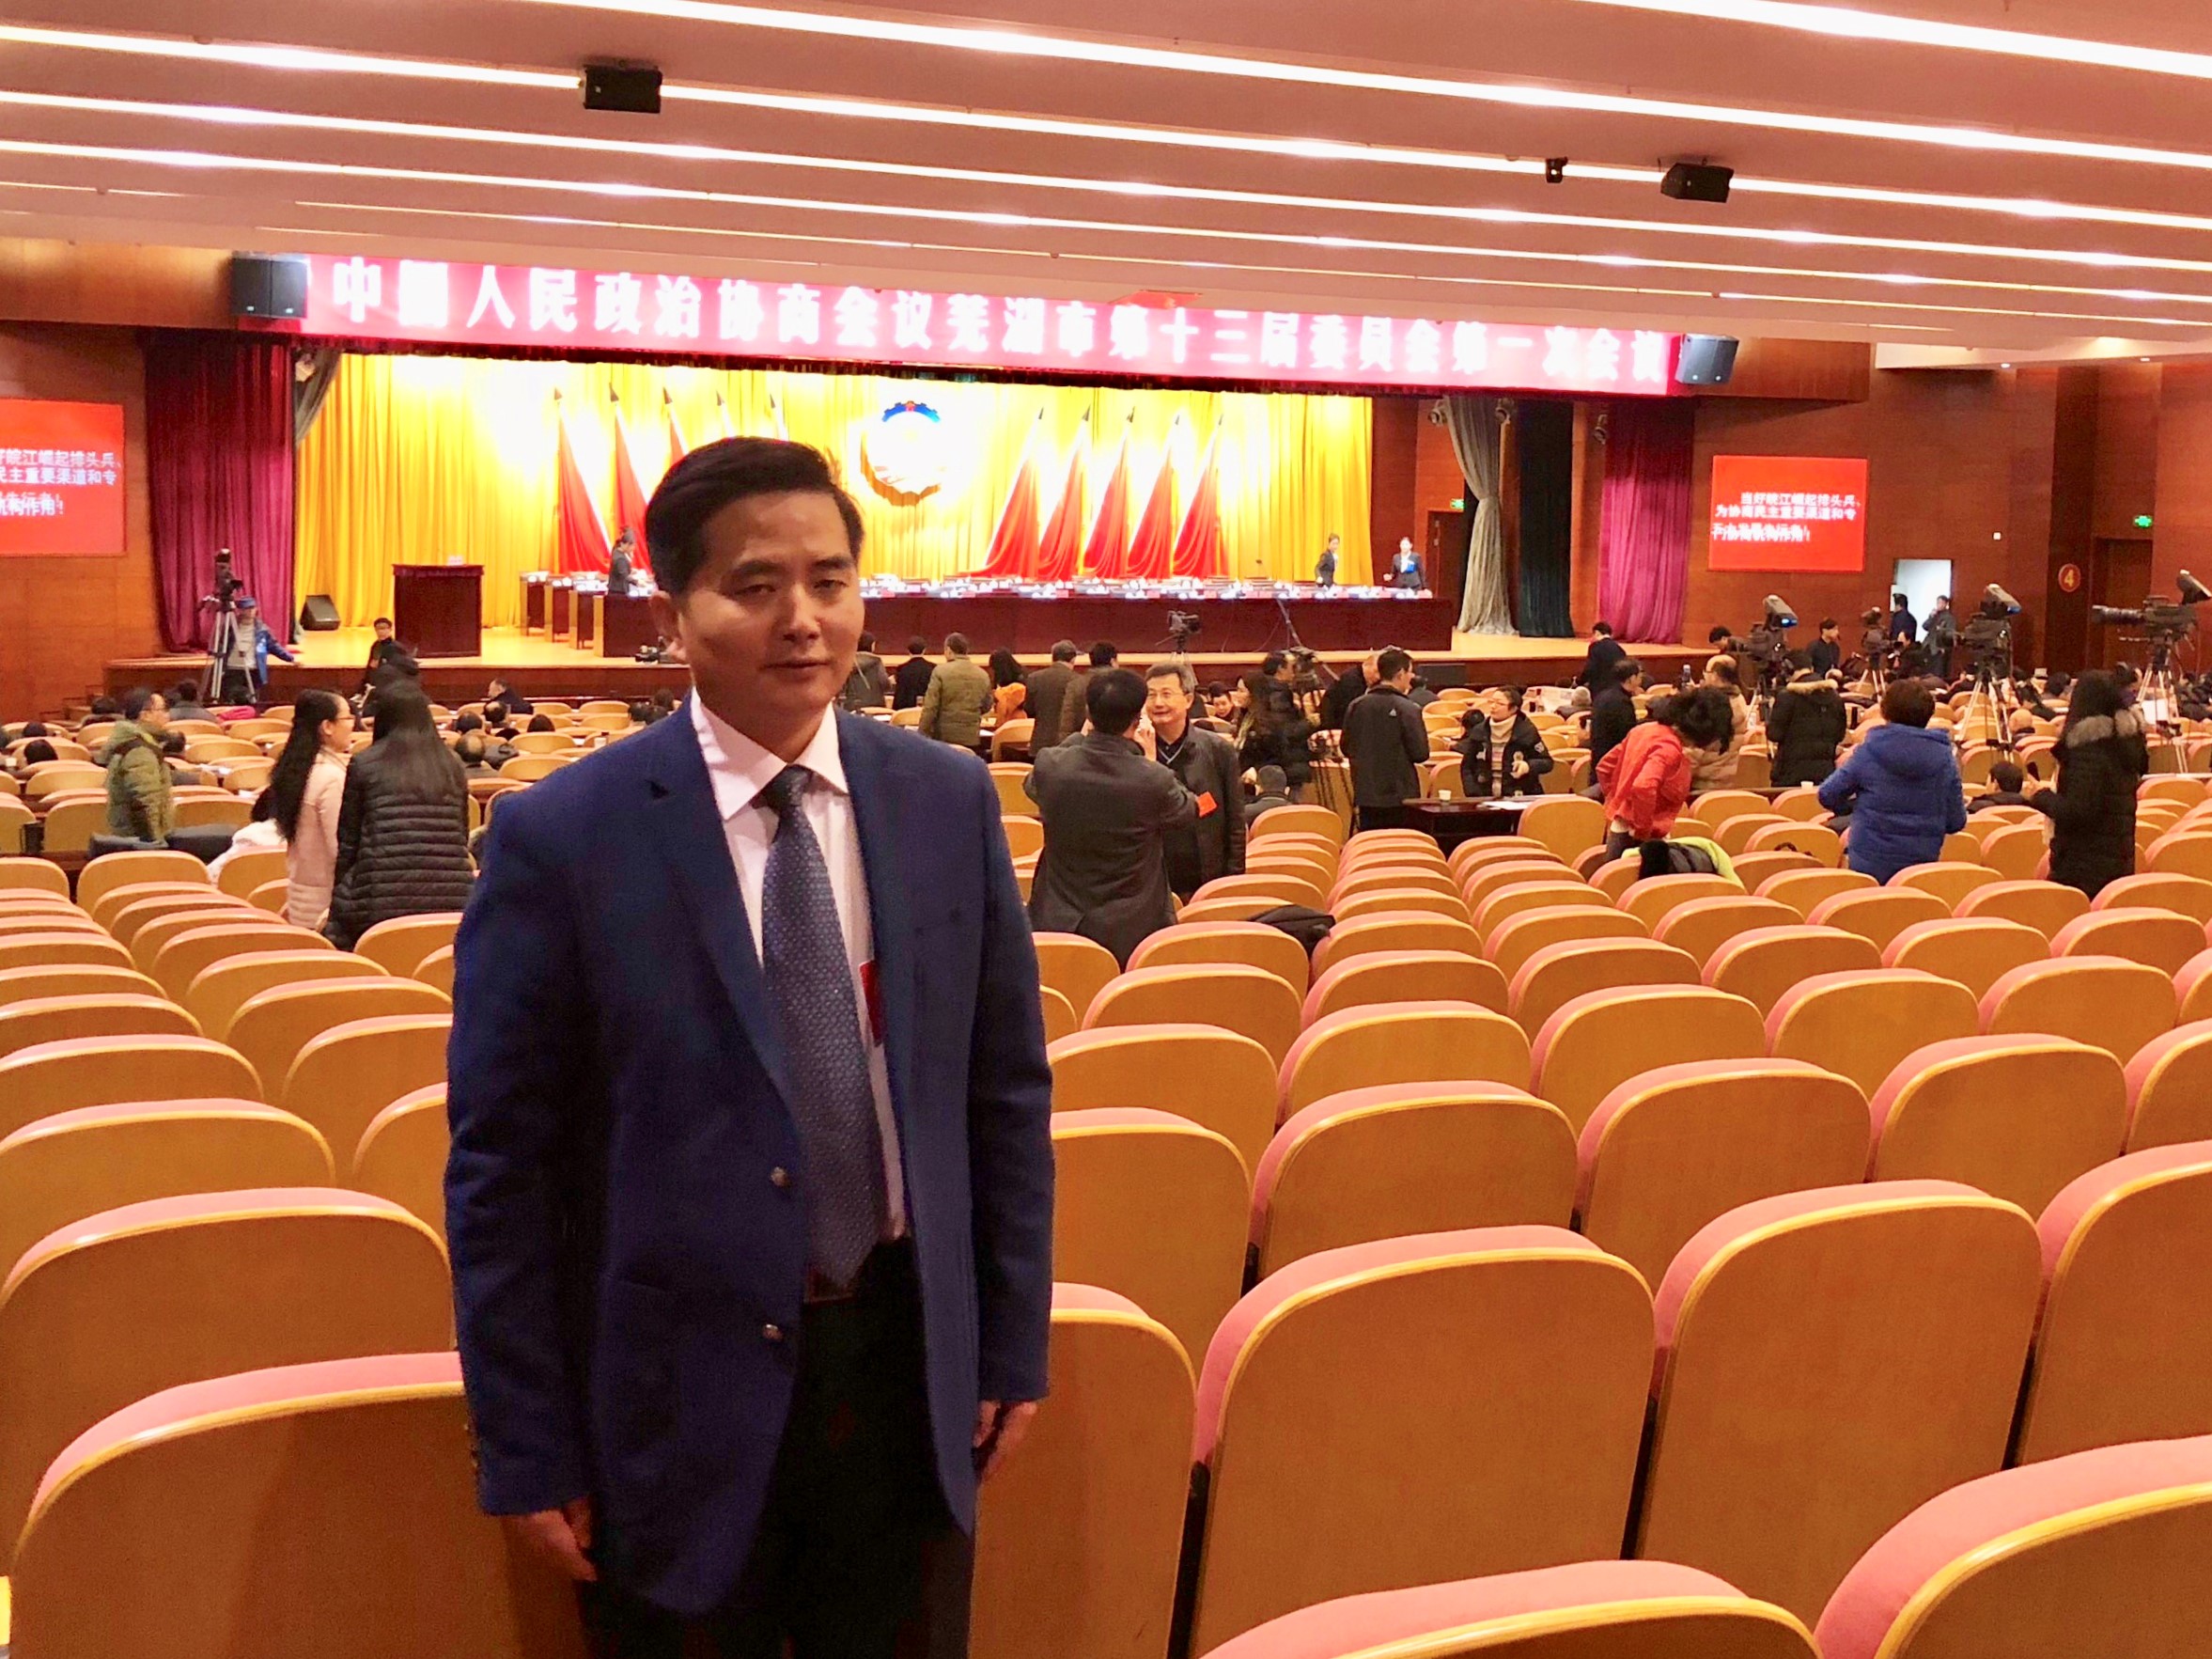 大成律师当选芜湖市政协委员并出席政协会议